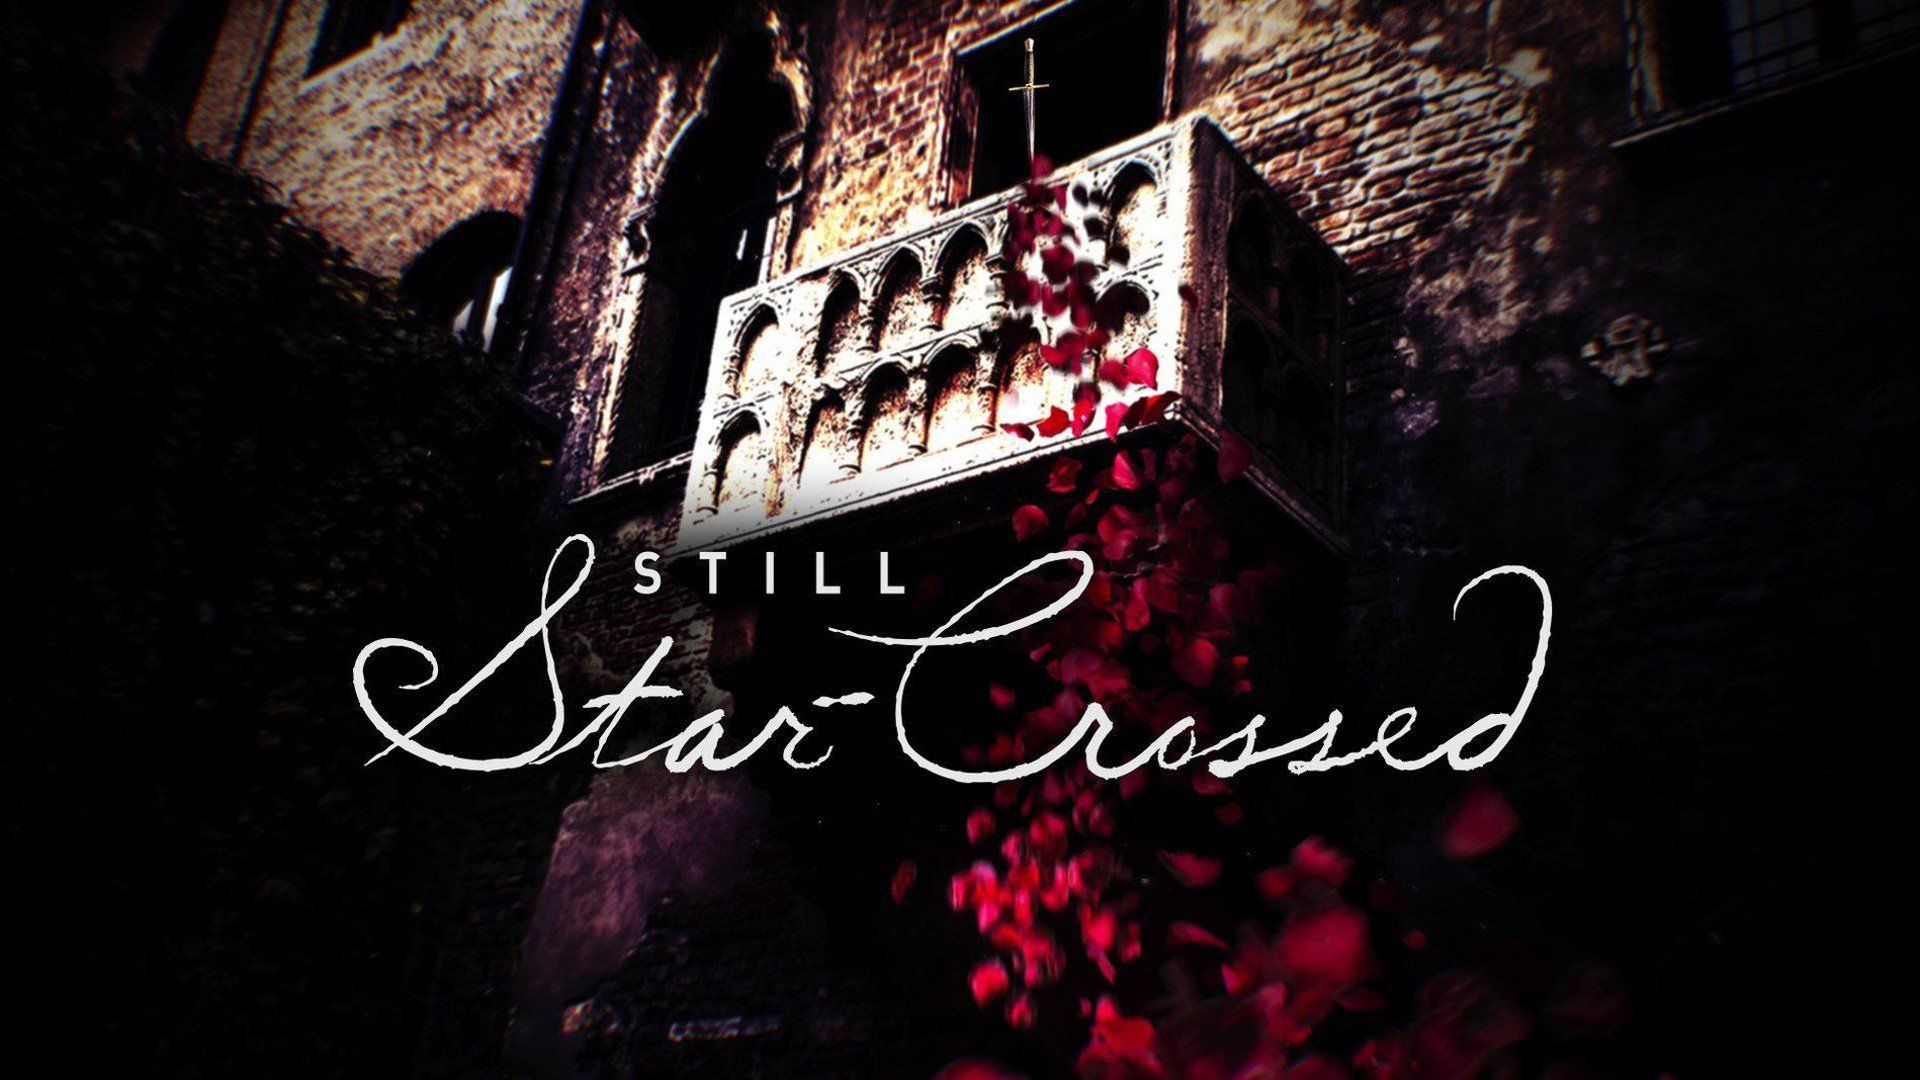 Cubierta de Still Star-Crossed